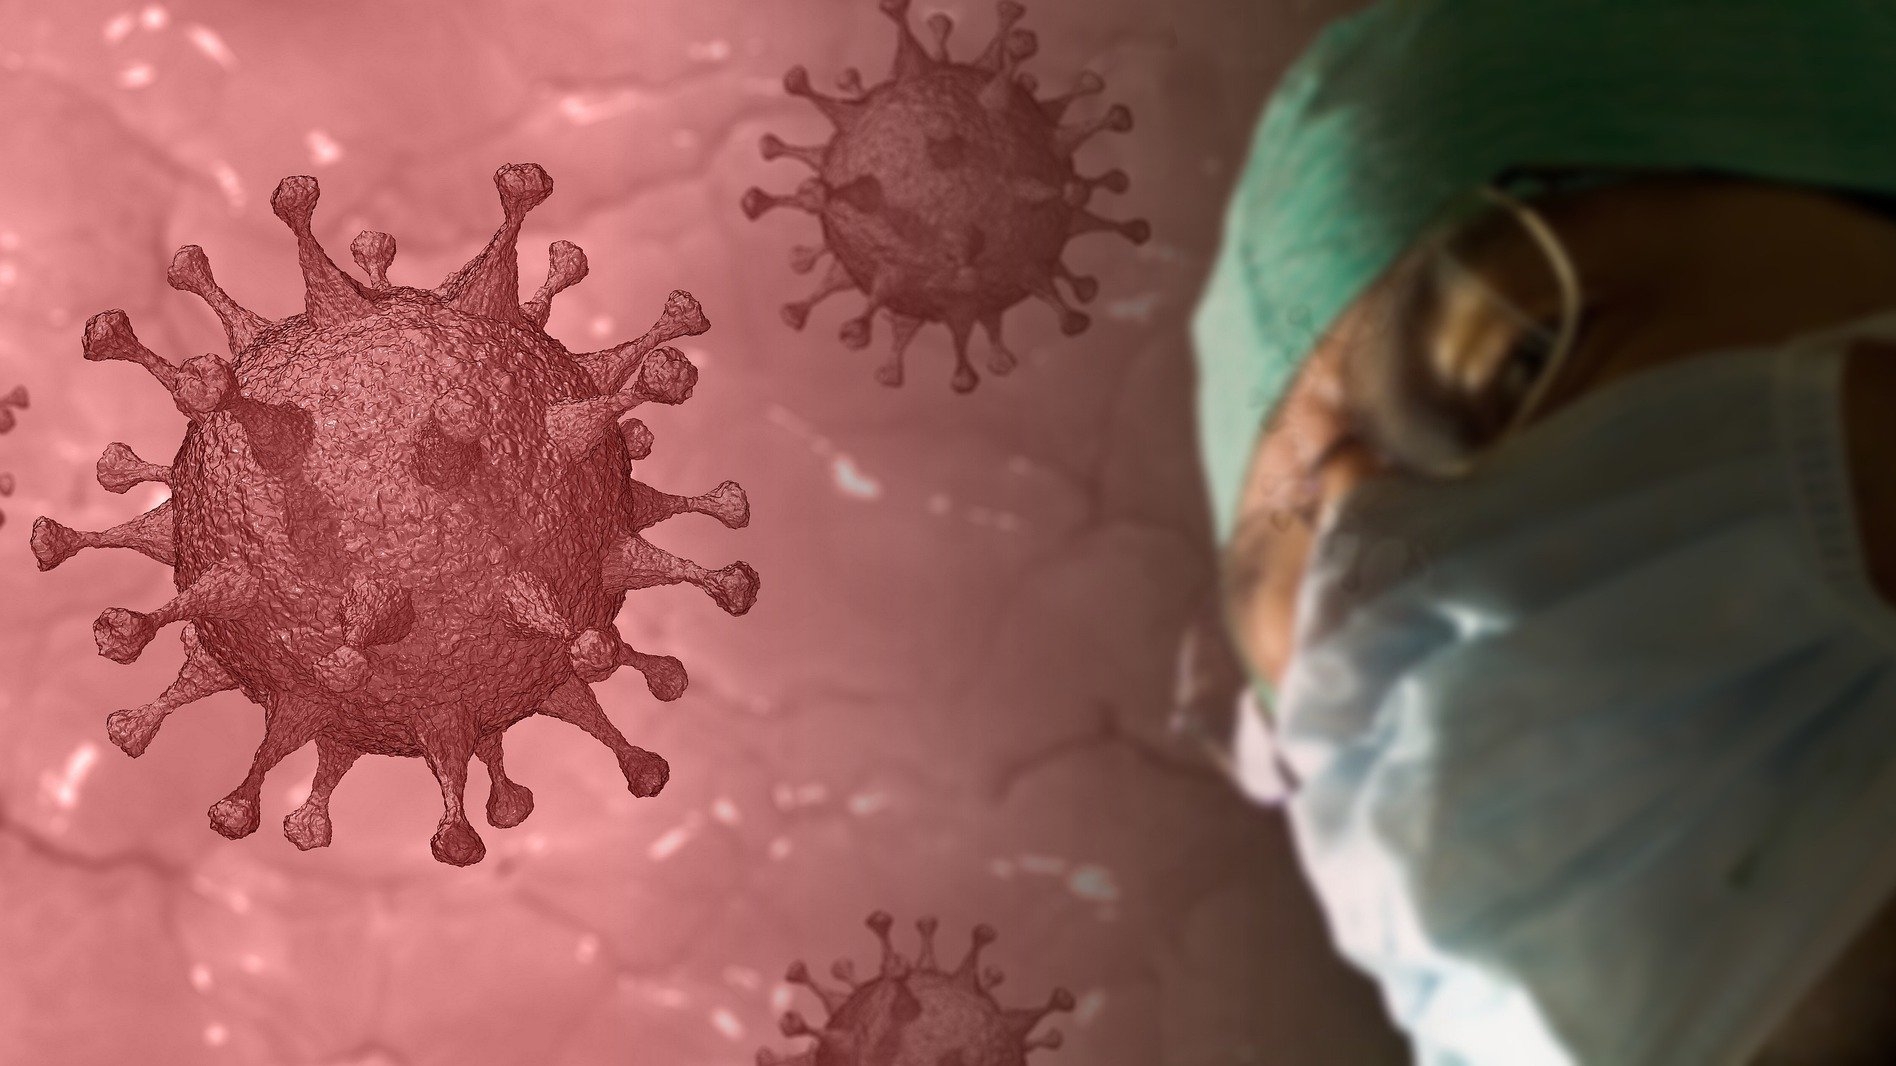 Autoritățile din România anunță noi restricții pentru limitarea răspândirii noului coronavirus